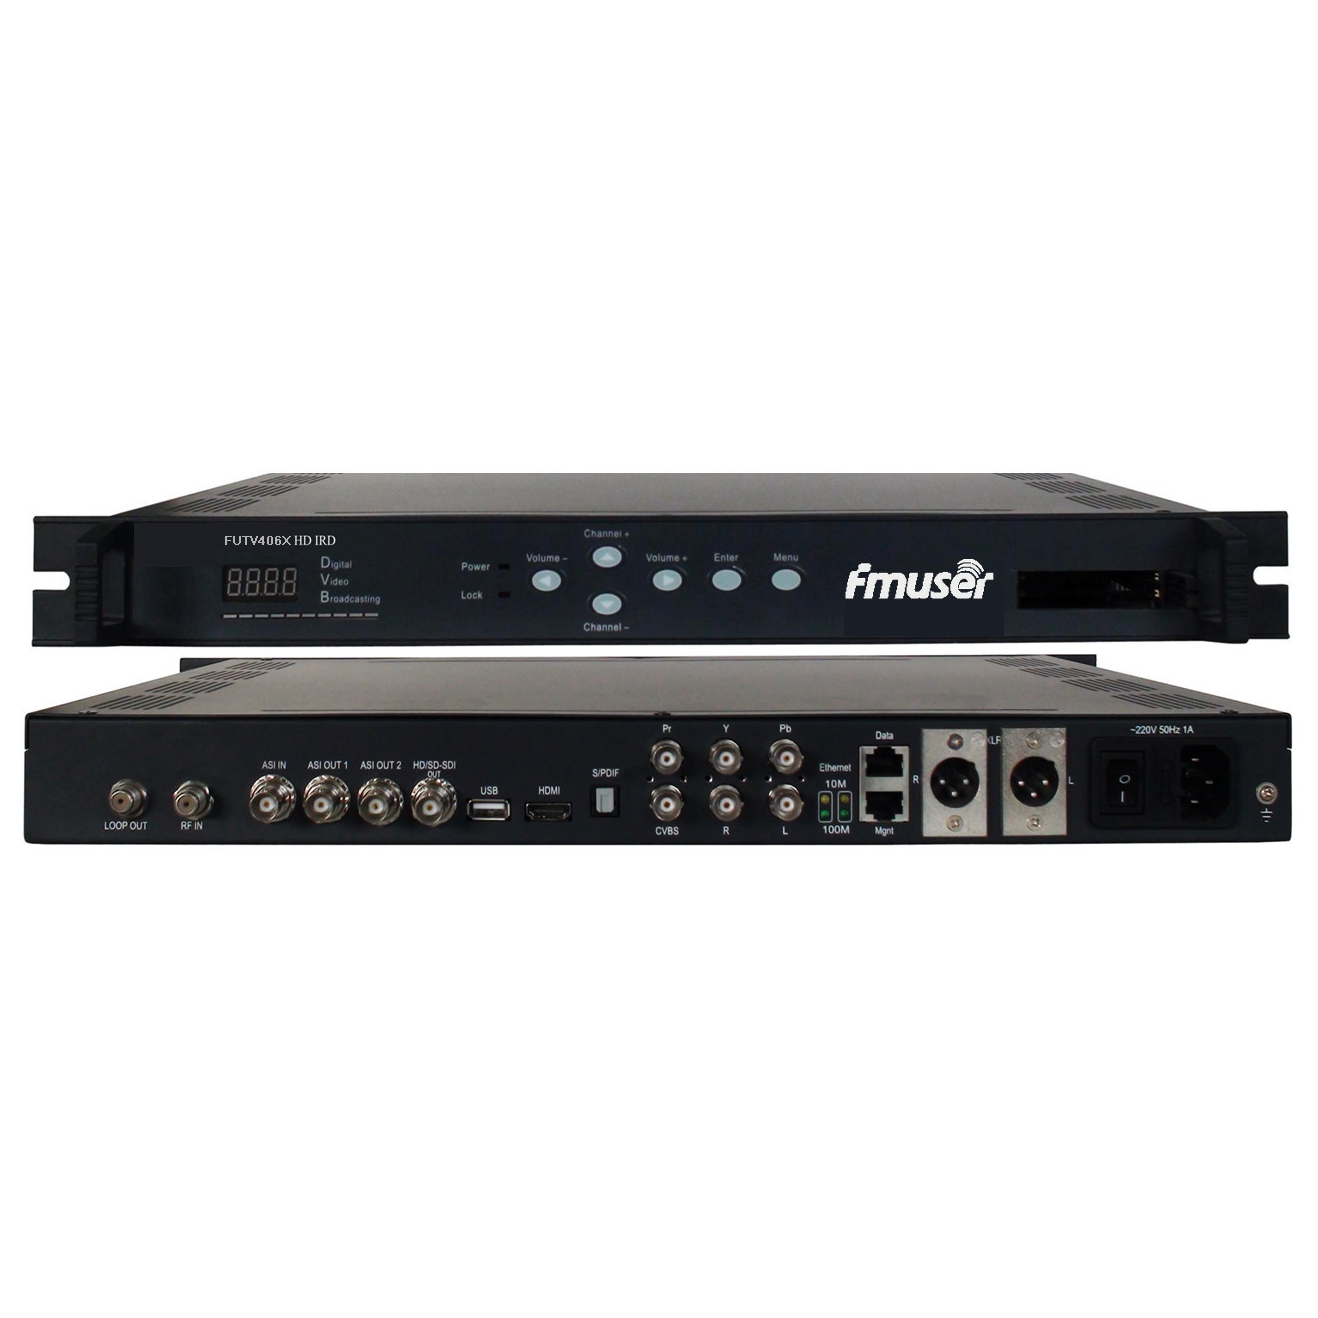 FMUSER FUTV406X HD IRD (1 DVB-S / S2 / T / C, ISDB-T HF-Eingang, 1 ASI IP In, 2 ASI 1 IP-Ausgang, HDMI-SDI CVBS XLR Out) mit MUX & BISS